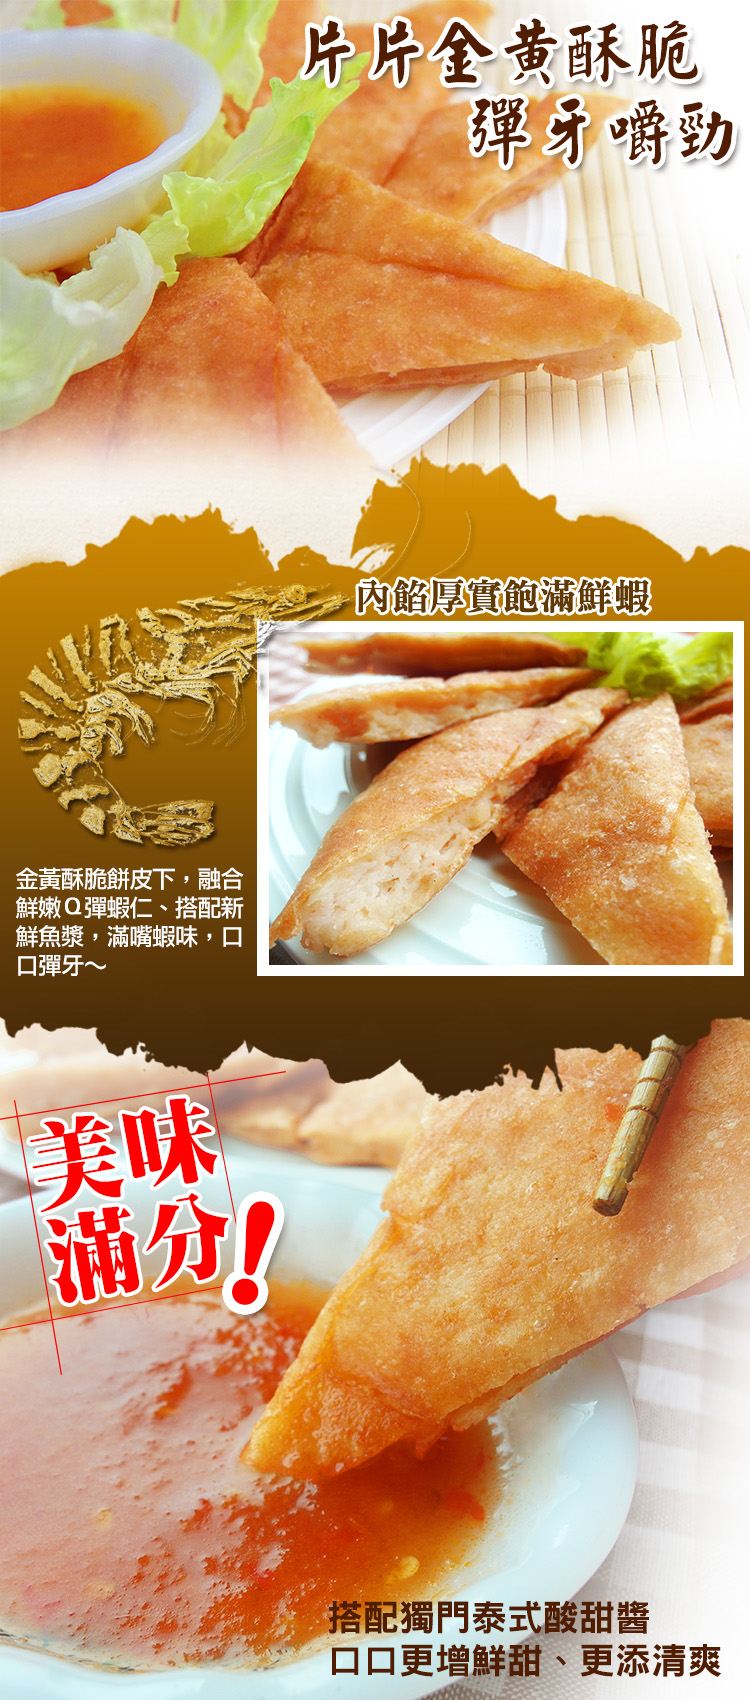 (團購組) 食吧嚴選 泰式黃金月亮蝦餅 30片組( 200g±10%/片 )-附泰式酸甜醬